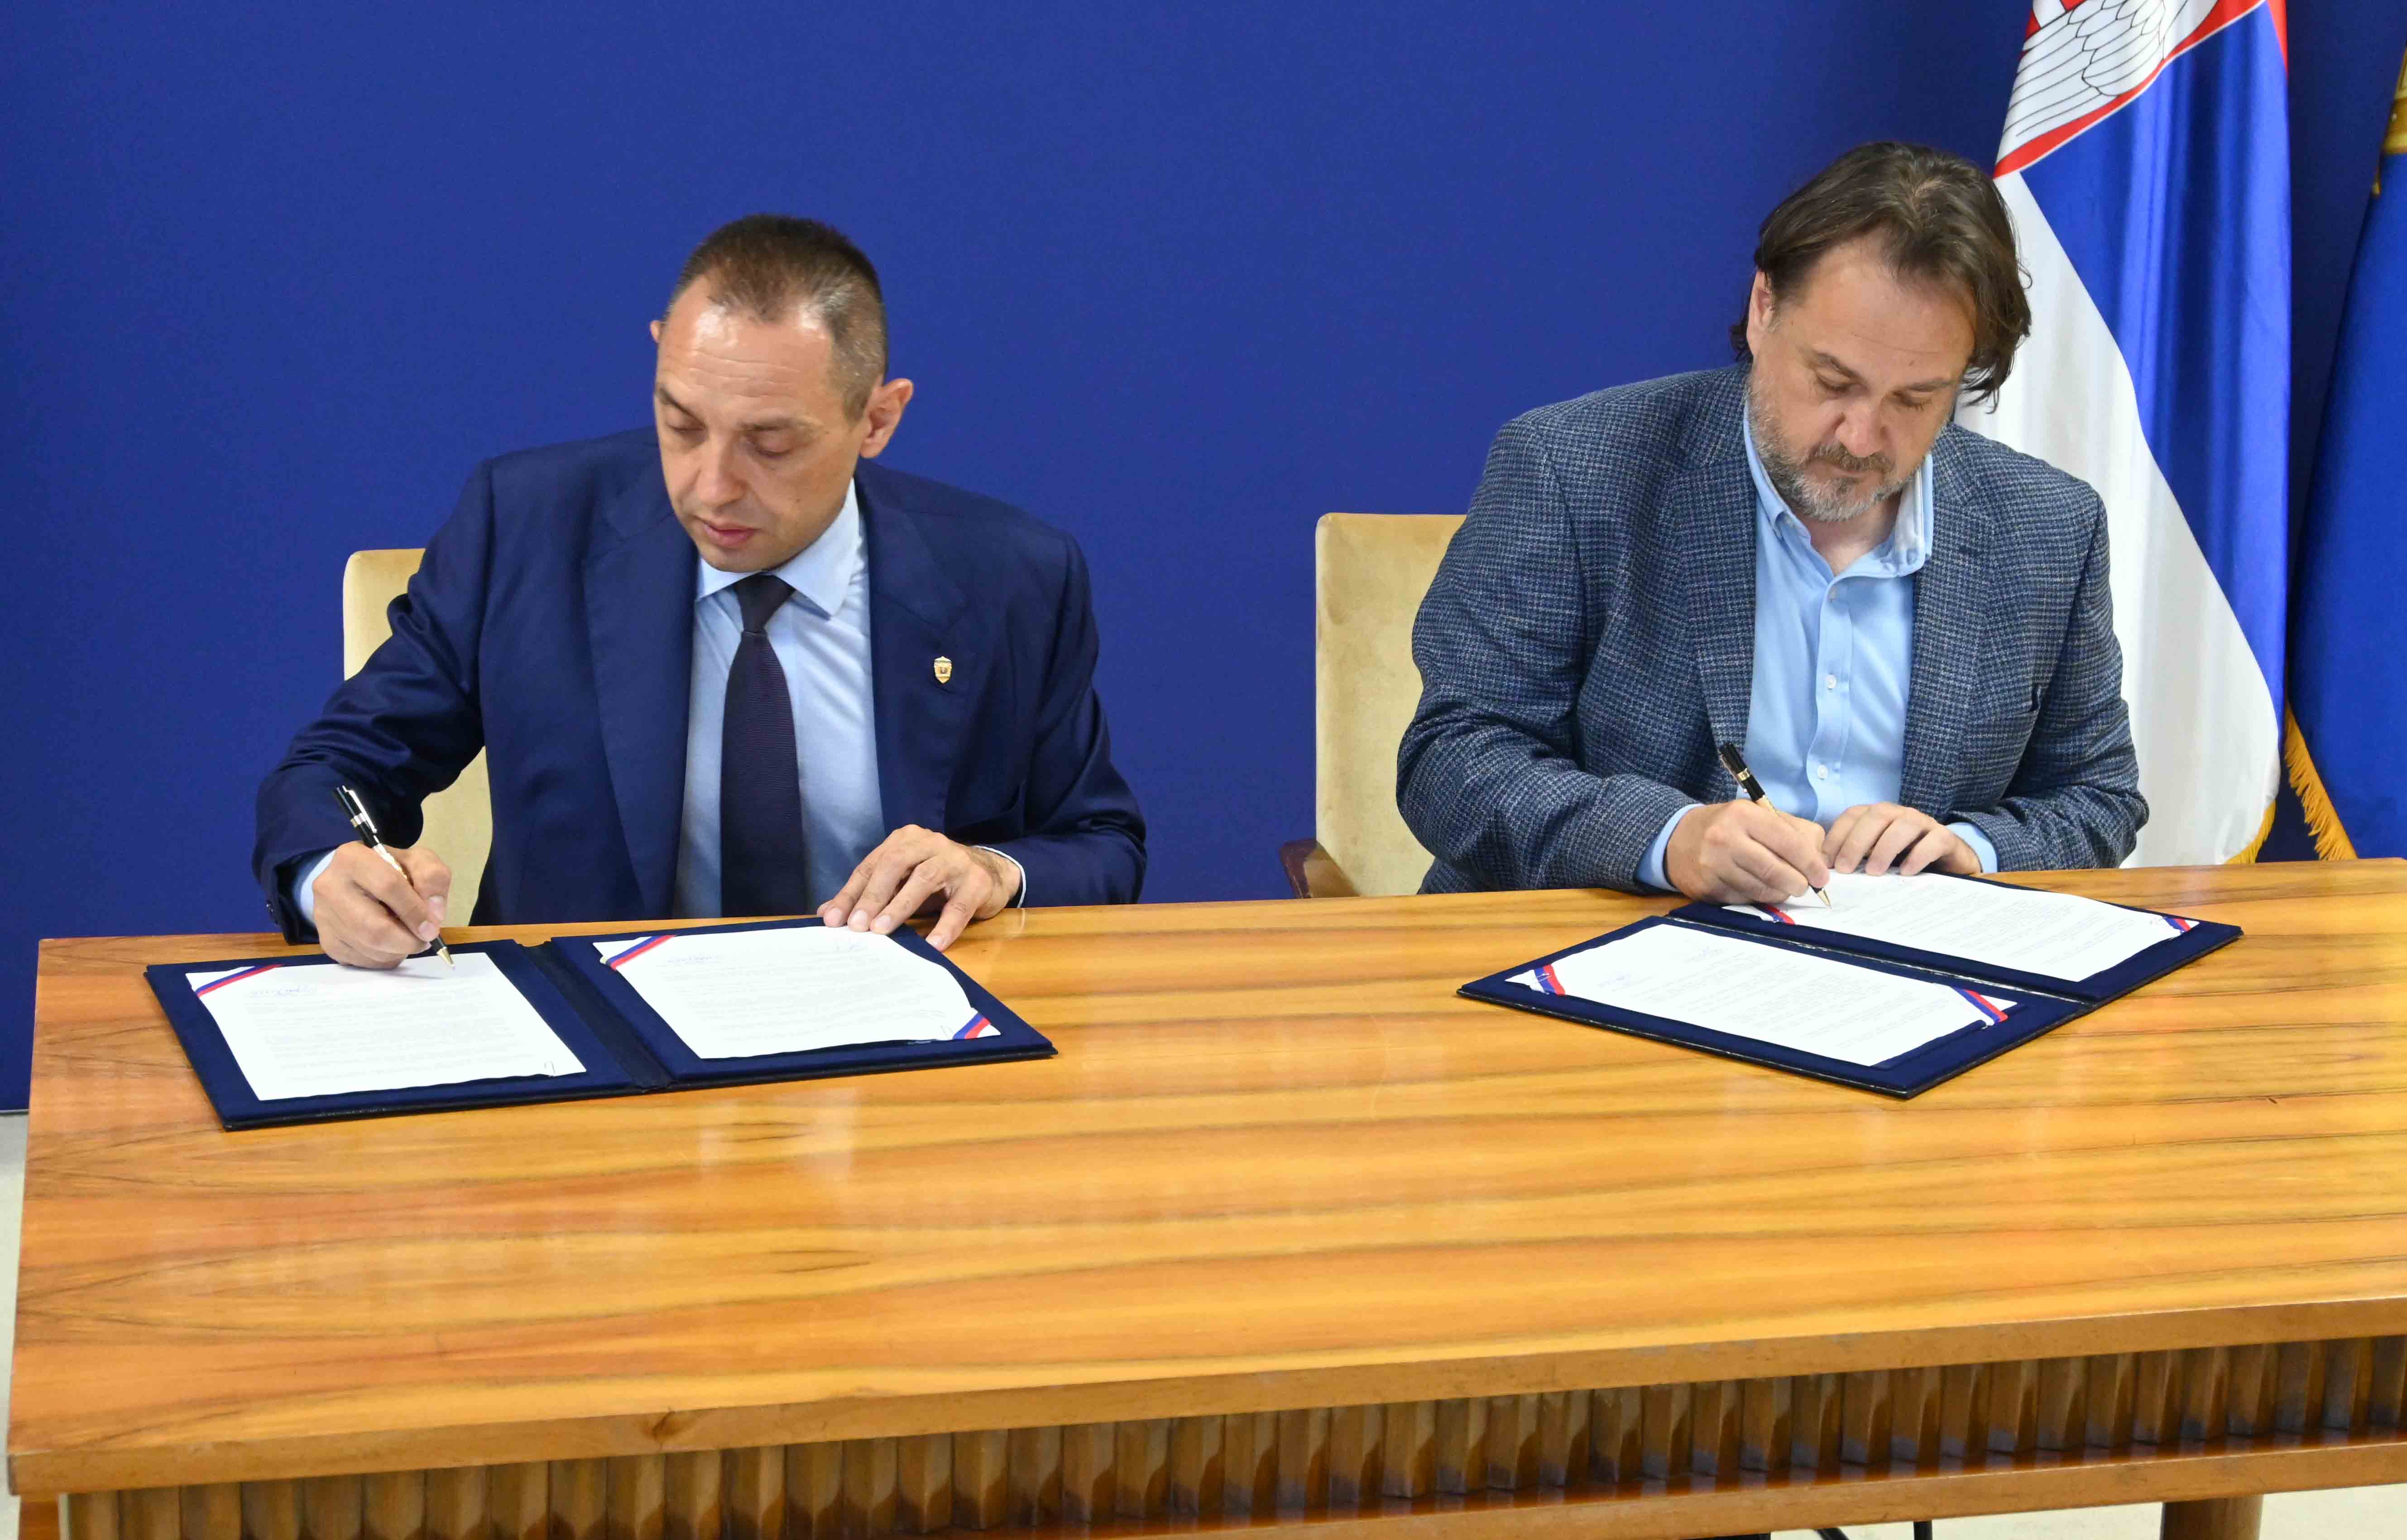 Министар Александар Вулин потписао је споразуме о сарадњи са представницима спортских савеза